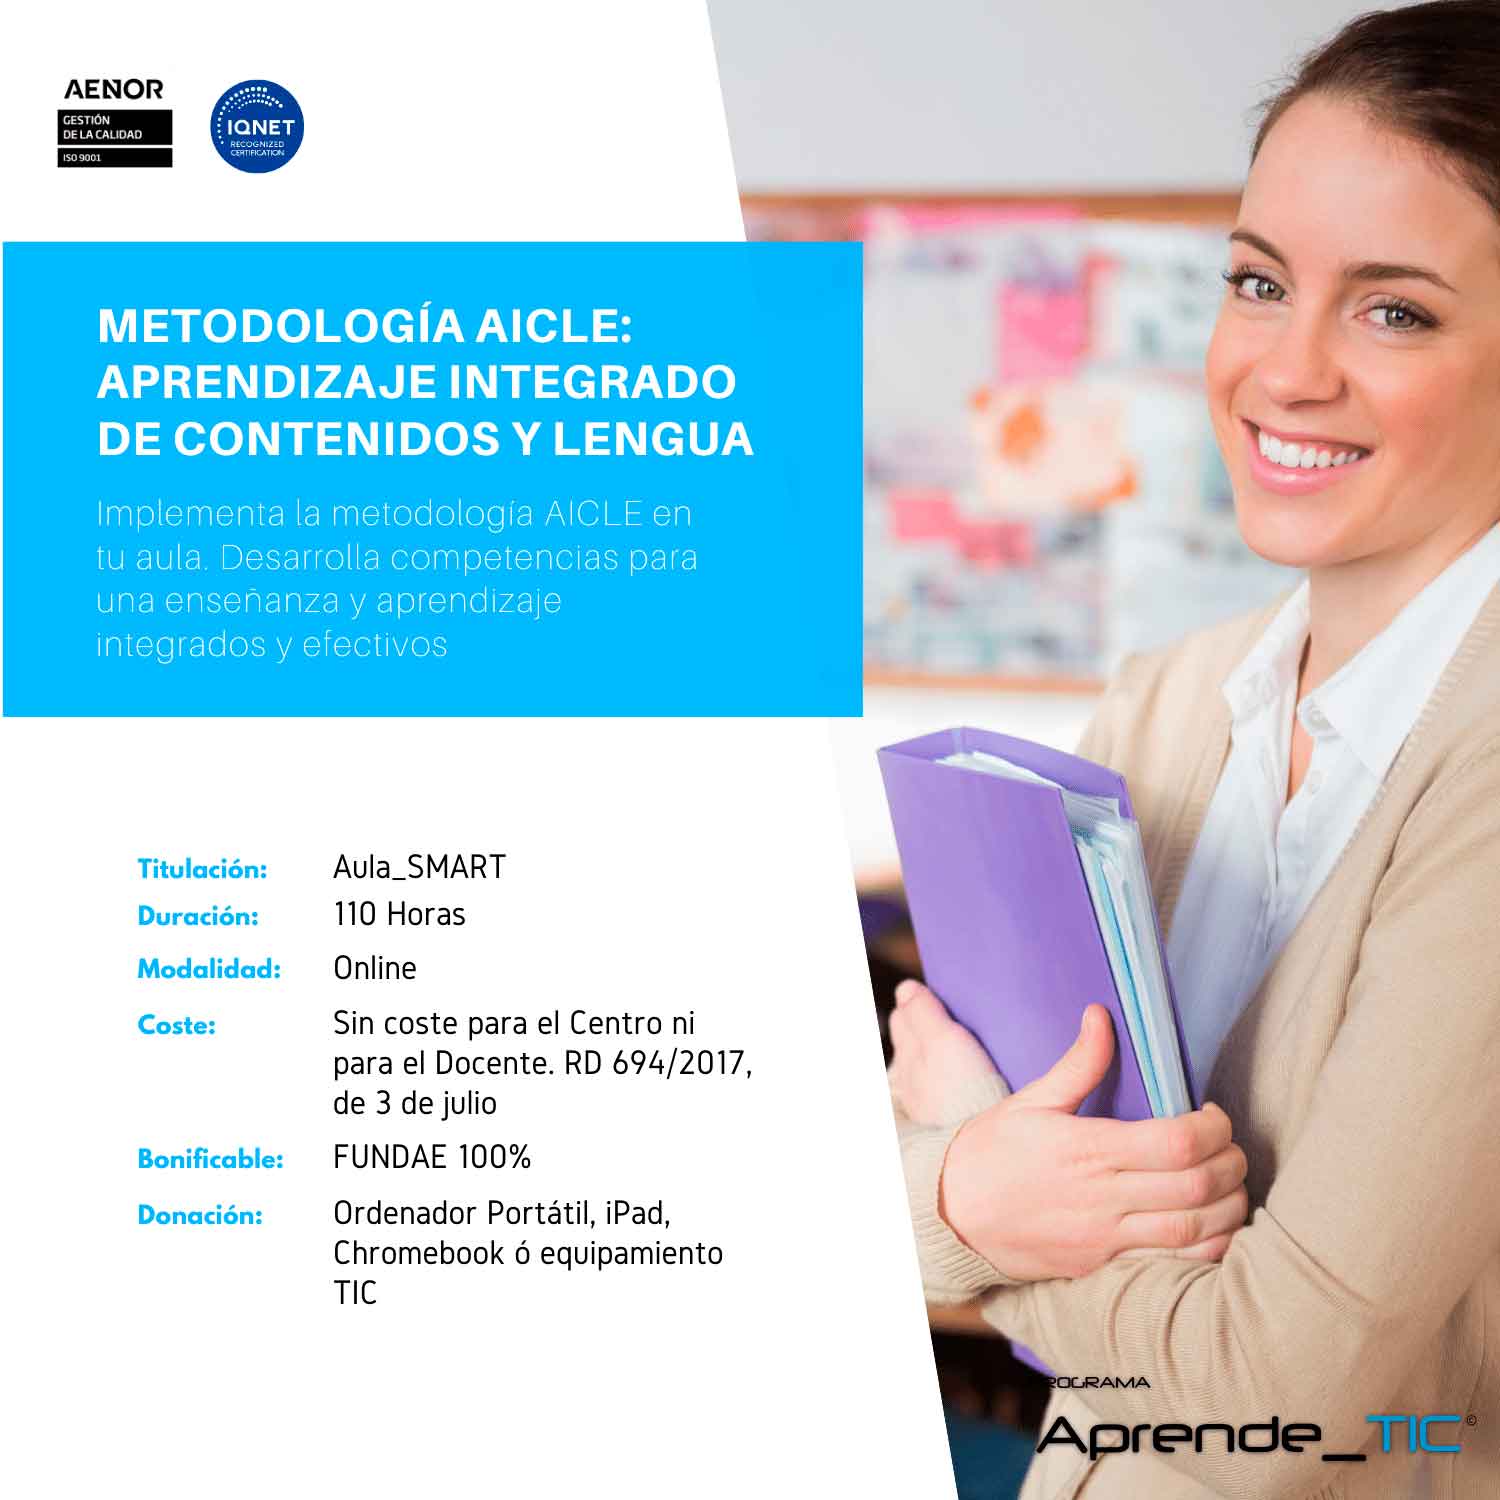 Metodología AICLE: Aprendizaje Integrado de Contenidos y Lengua